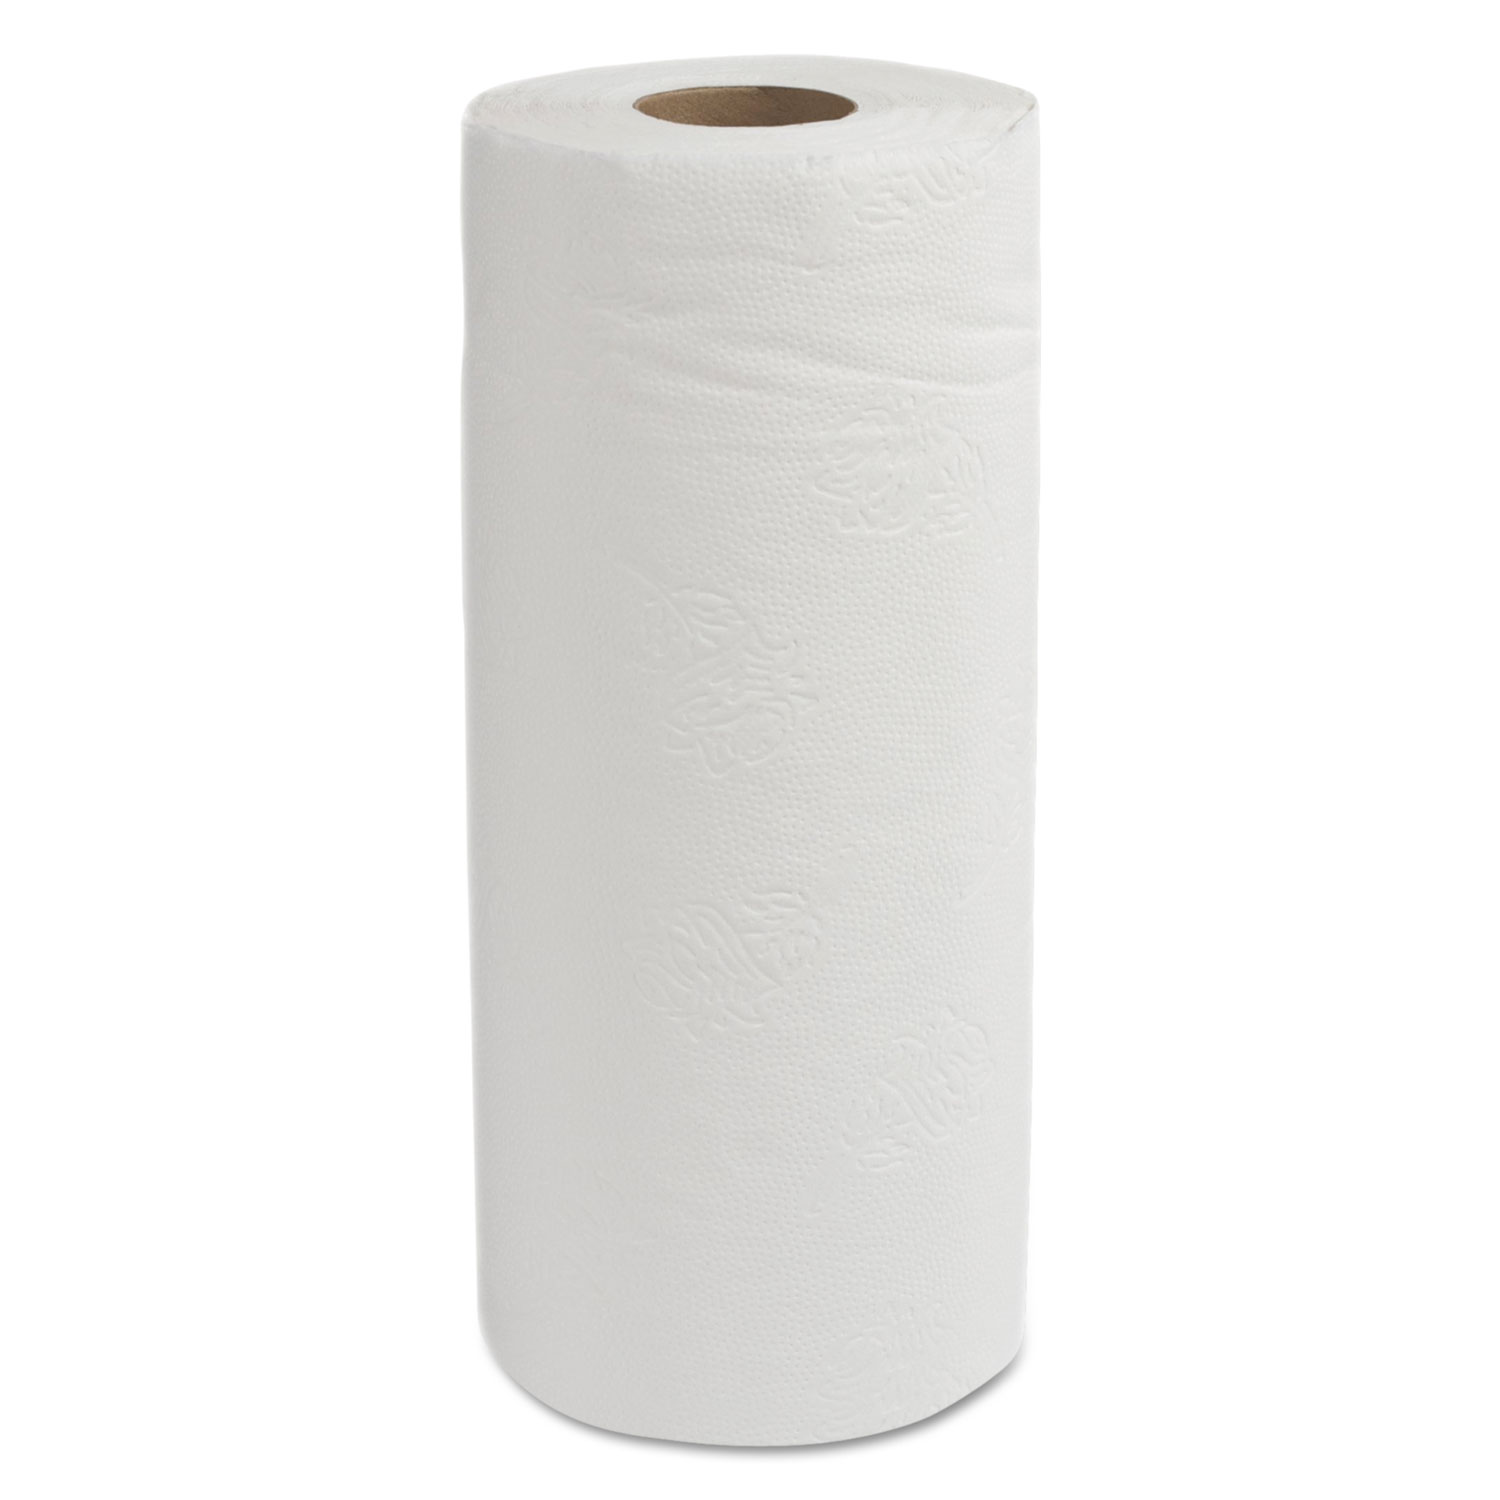  GEN GEN1906 Household Perforated Paper Towel, 11w x 9l, White, 85/Roll, 30 Rolls/Carton (GEN1906) 